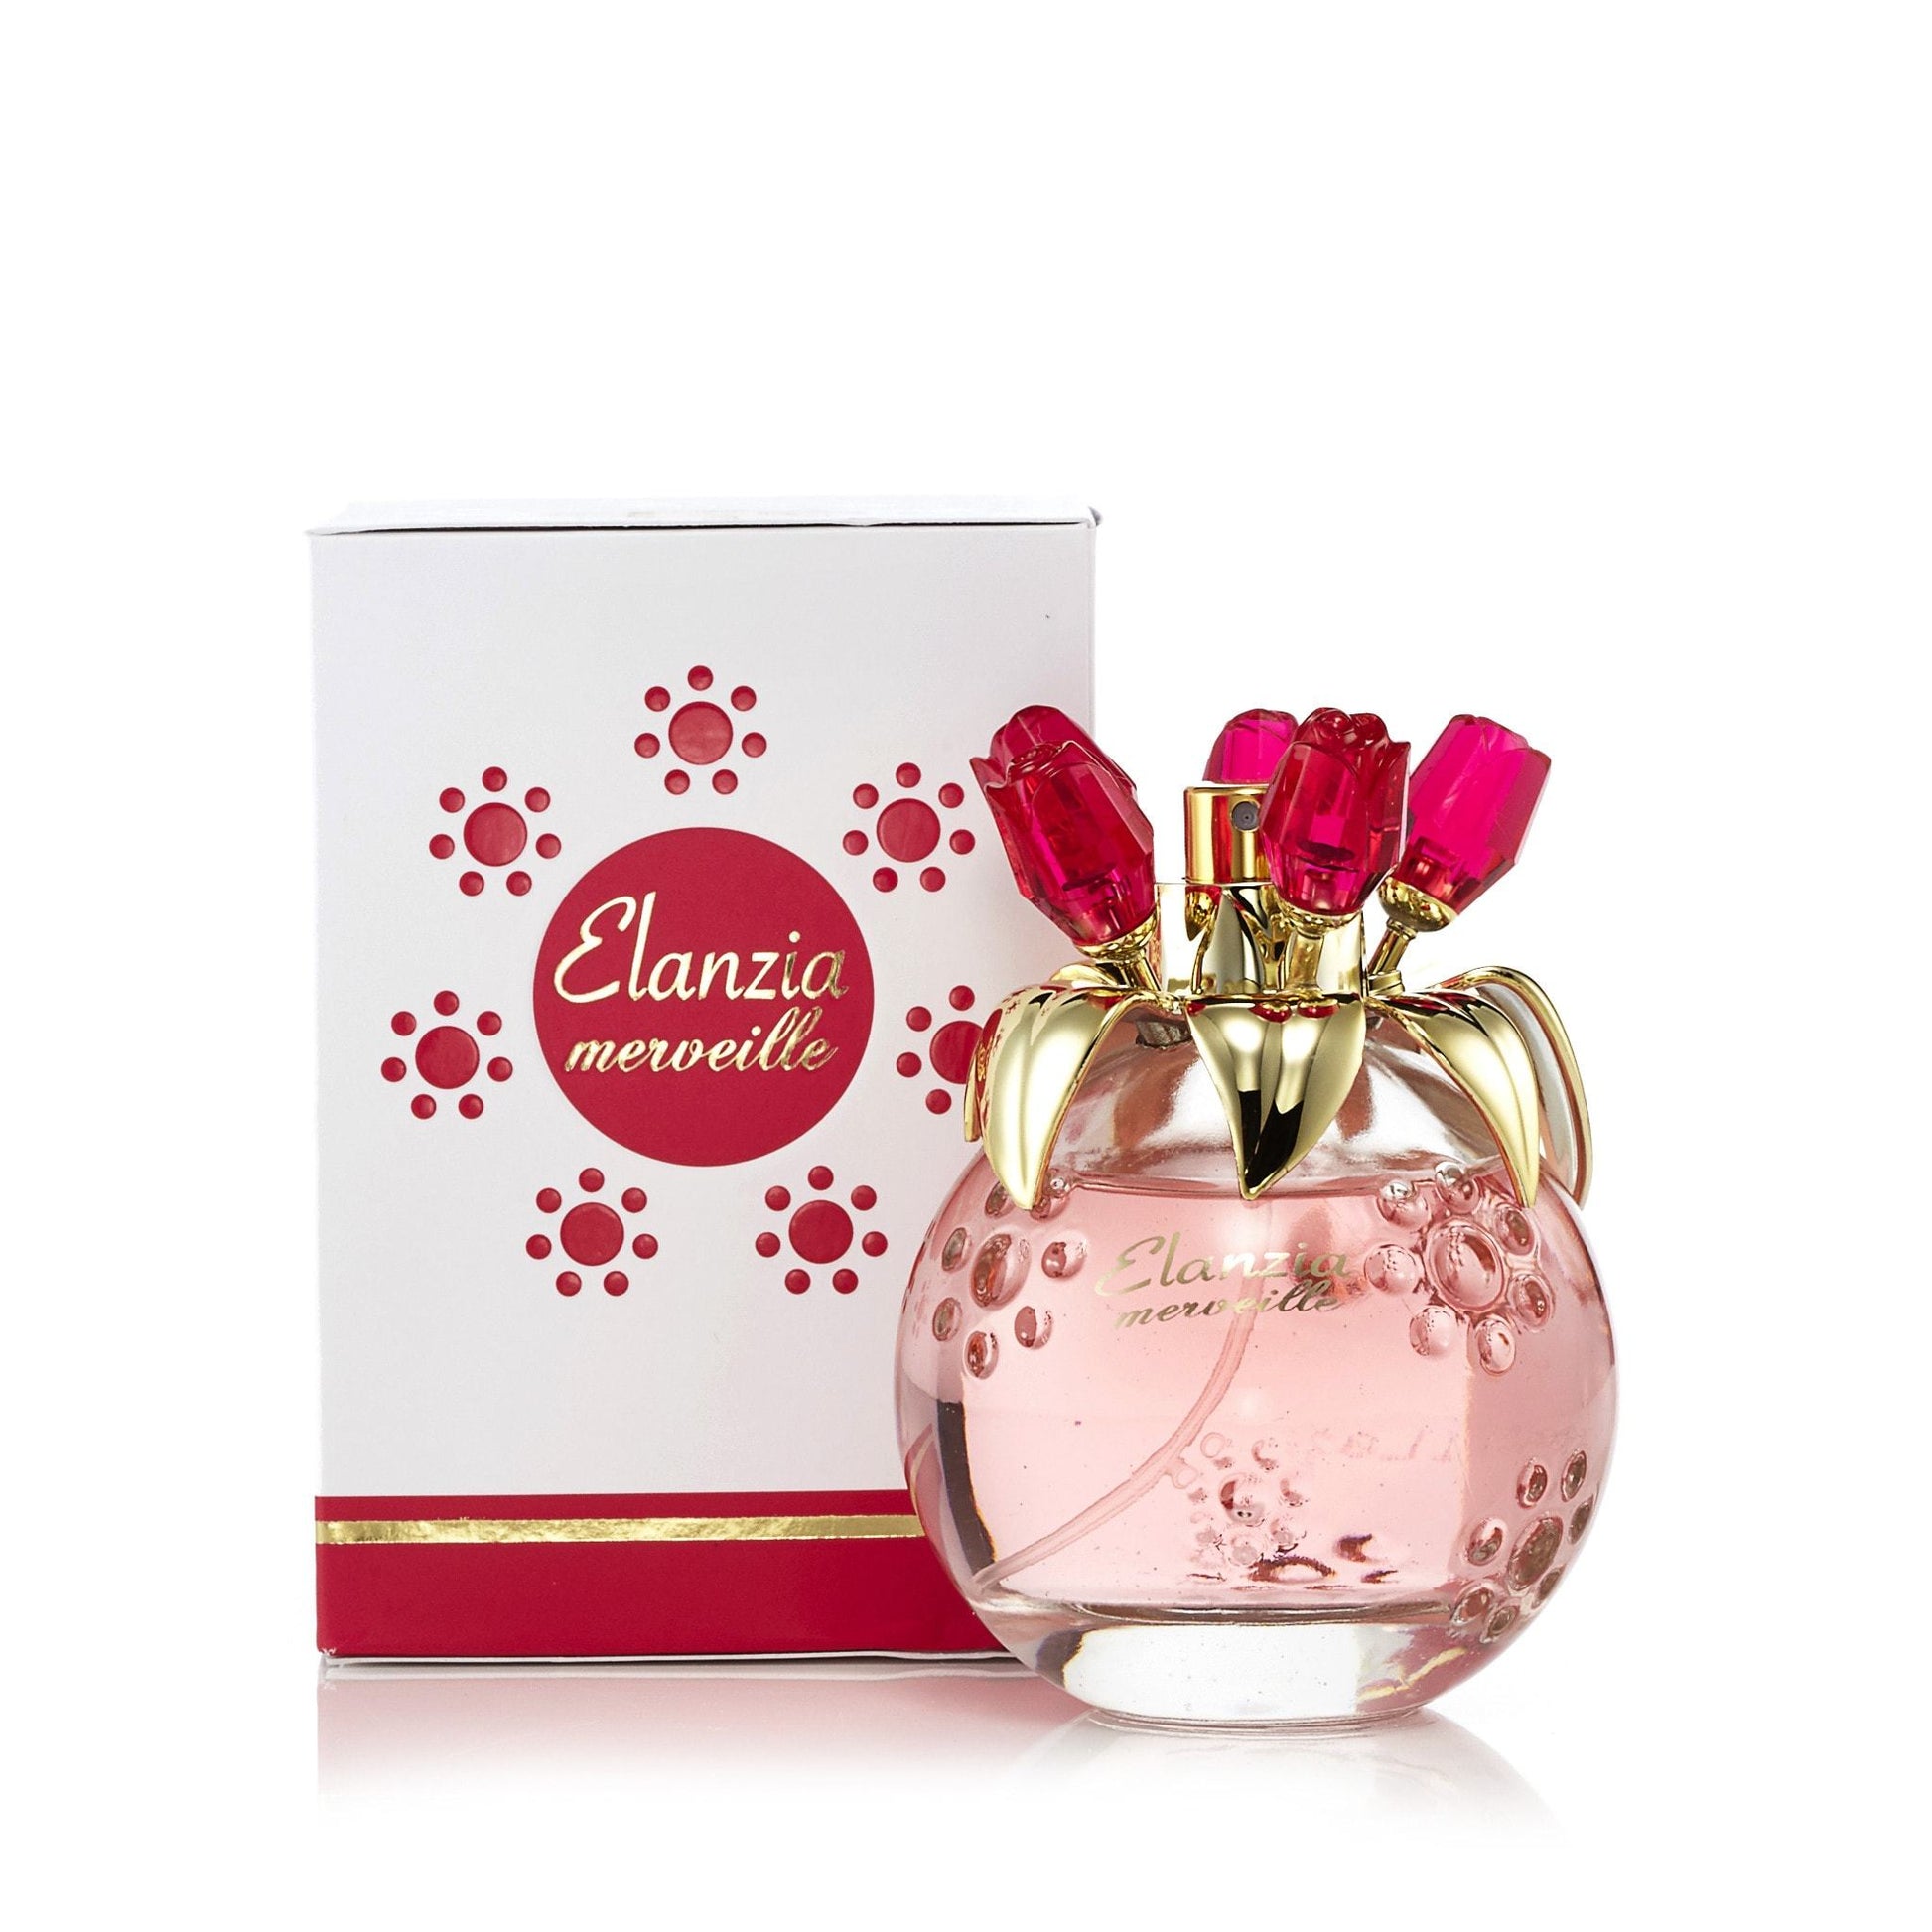 Elanzia Mervielle Pink Eau de Parfum Spray for Women, Product image 2